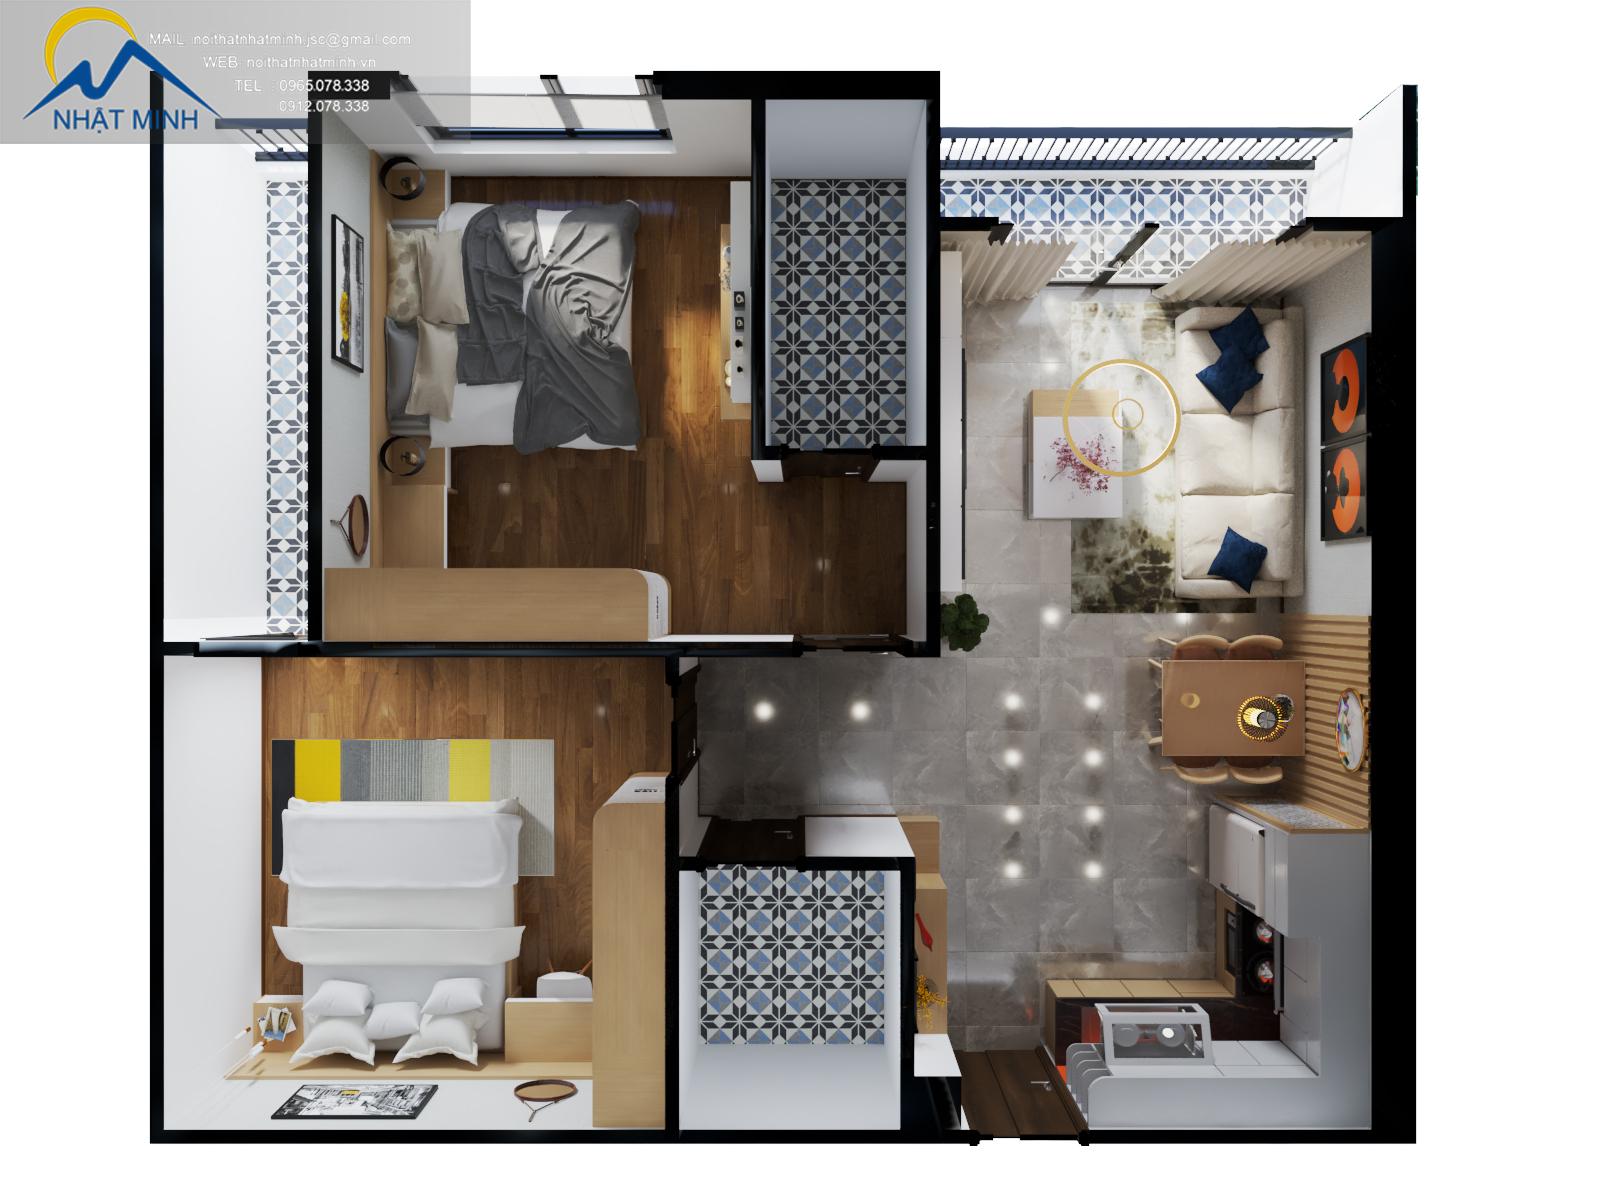 Tổng hợp 10 mẫu thiết kế nội thất chung cư hiện đại 2020 chắc chắn sẽ là một nguồn cảm hứng vô tận cho những ai đang muốn tìm kiếm những ý tưởng thiết kế mới cho căn hộ của mình vào năm